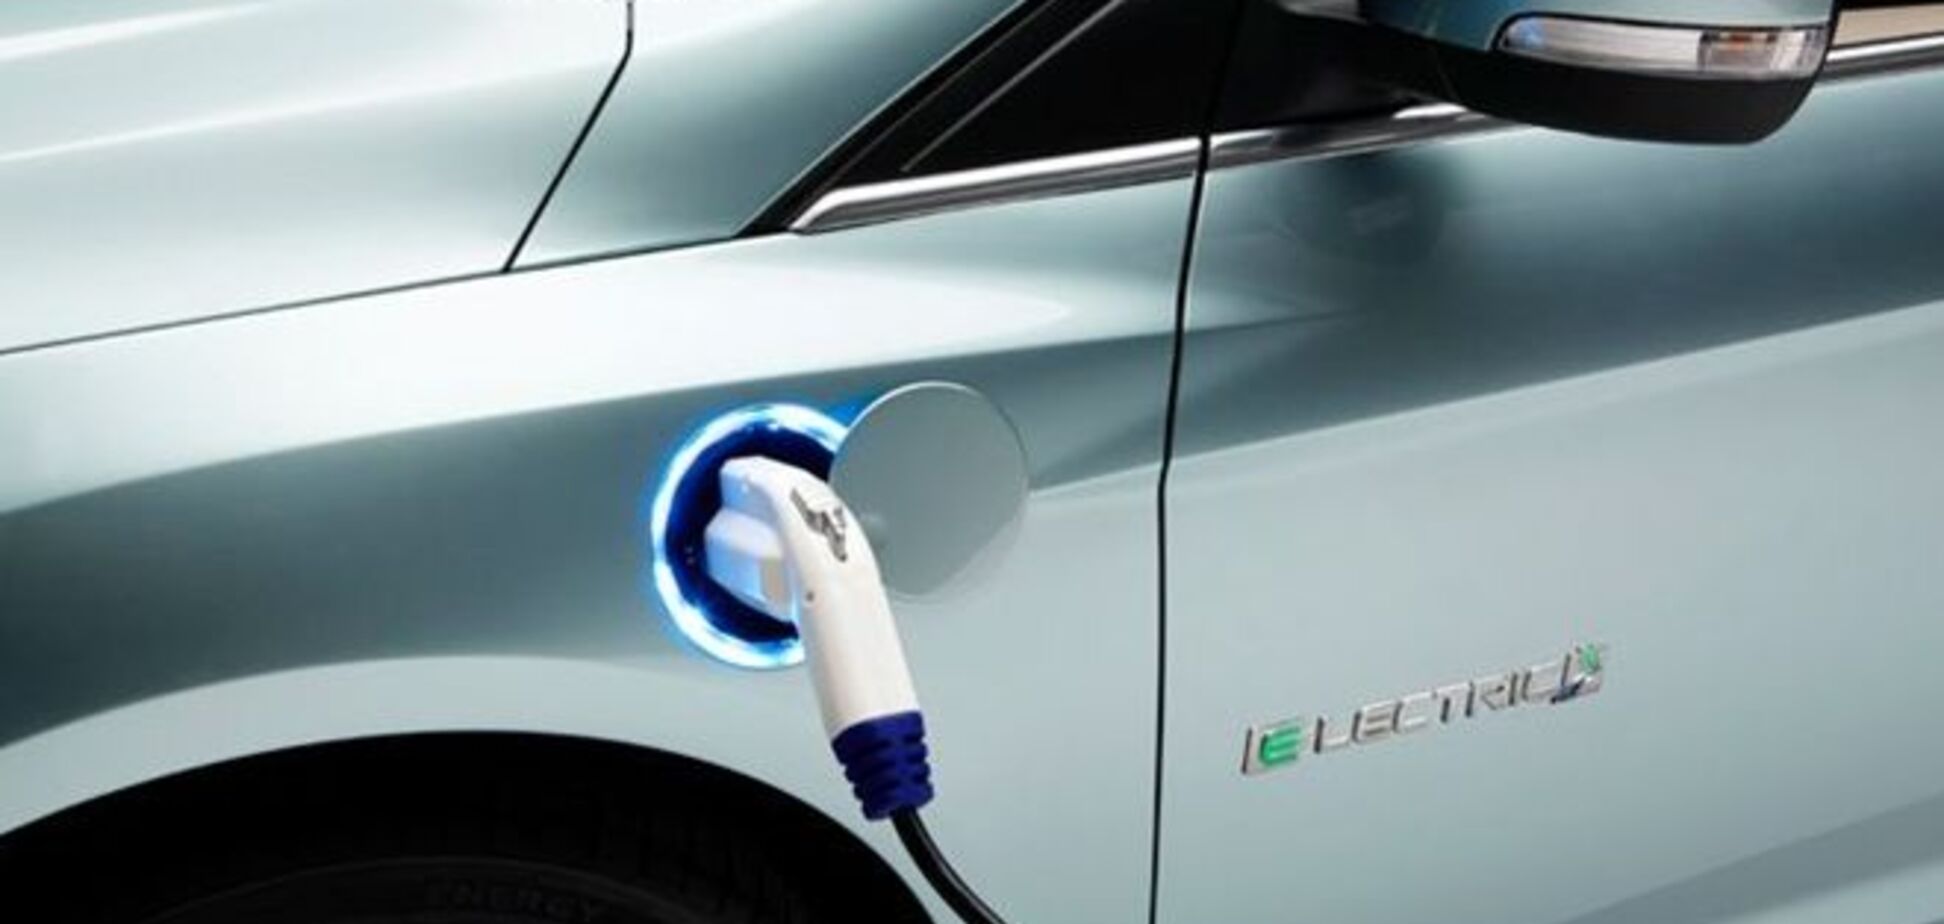 Электрокары развиваются быстрее гибридных и бензиновых авто